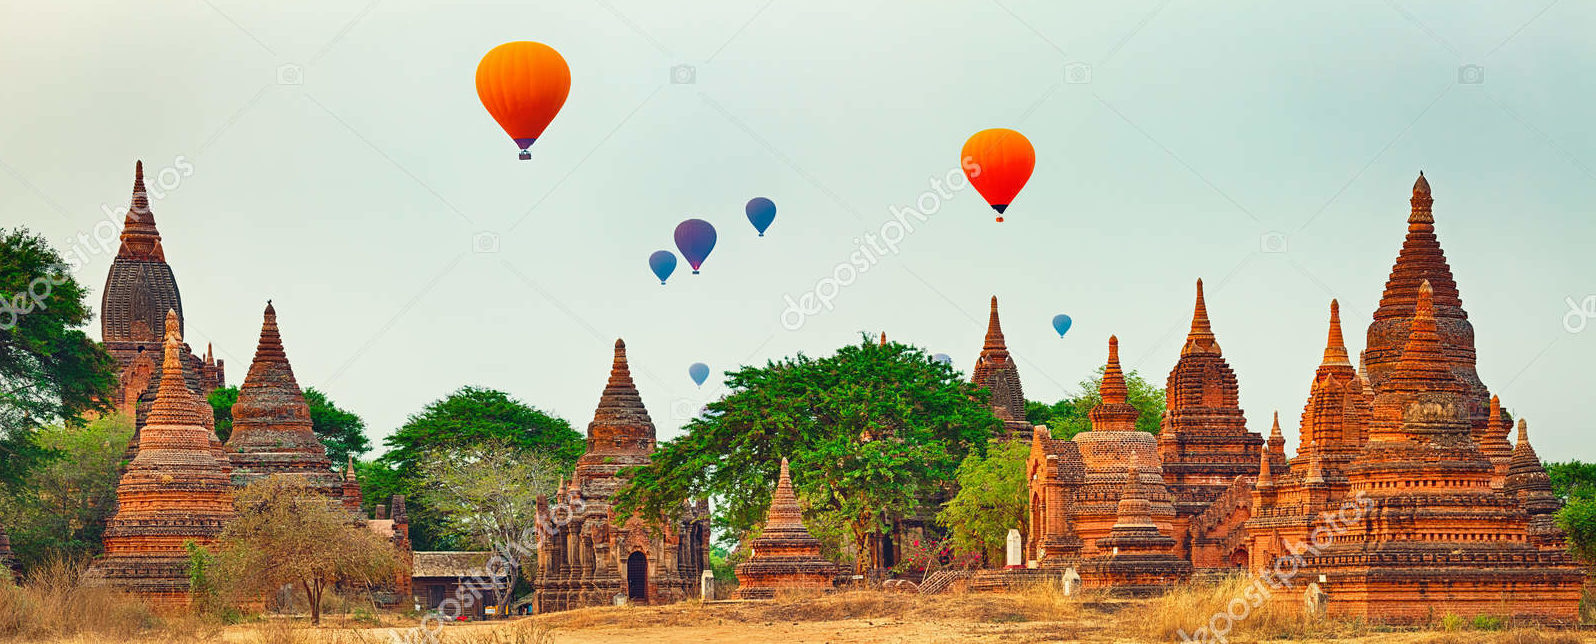 Храмы и воздушные шары